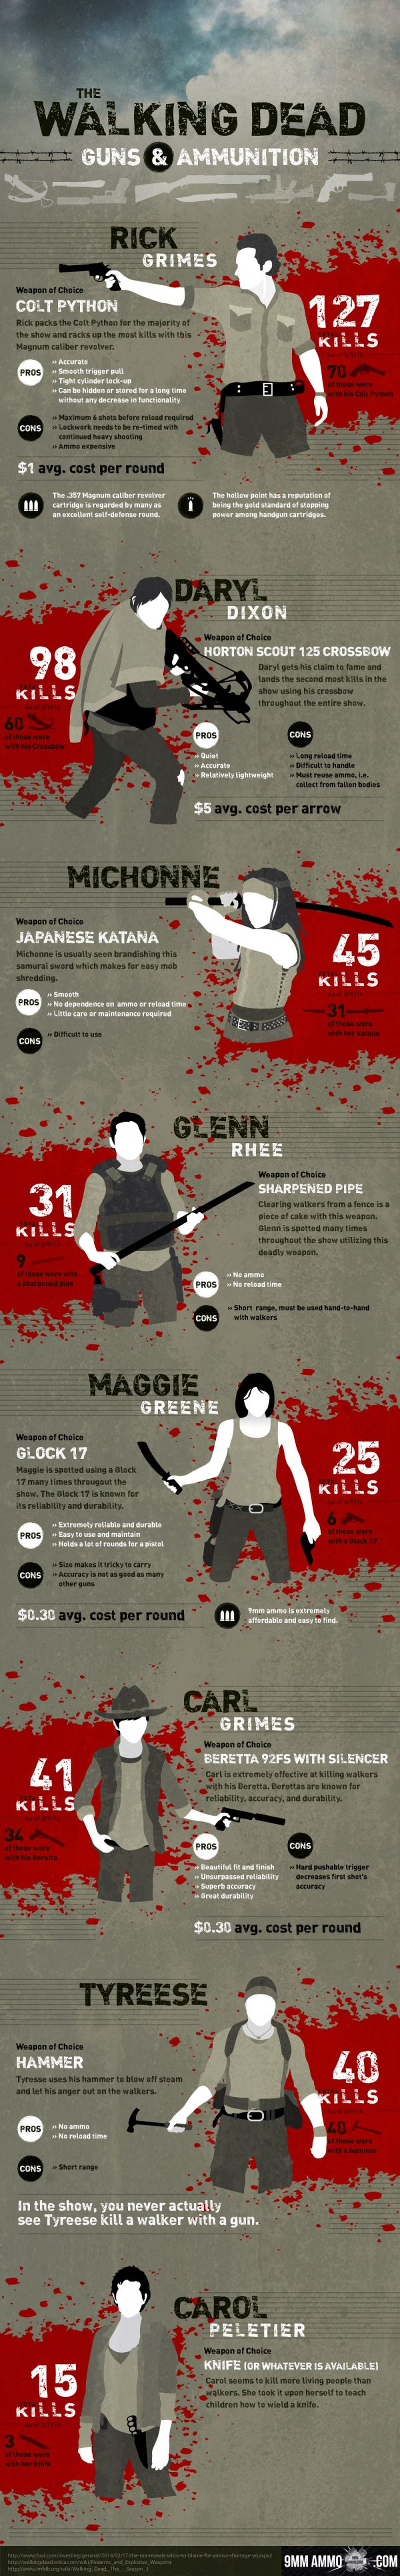 Infografía: ¿Cuántos zombis han matado los personajes de The Walking Dead?